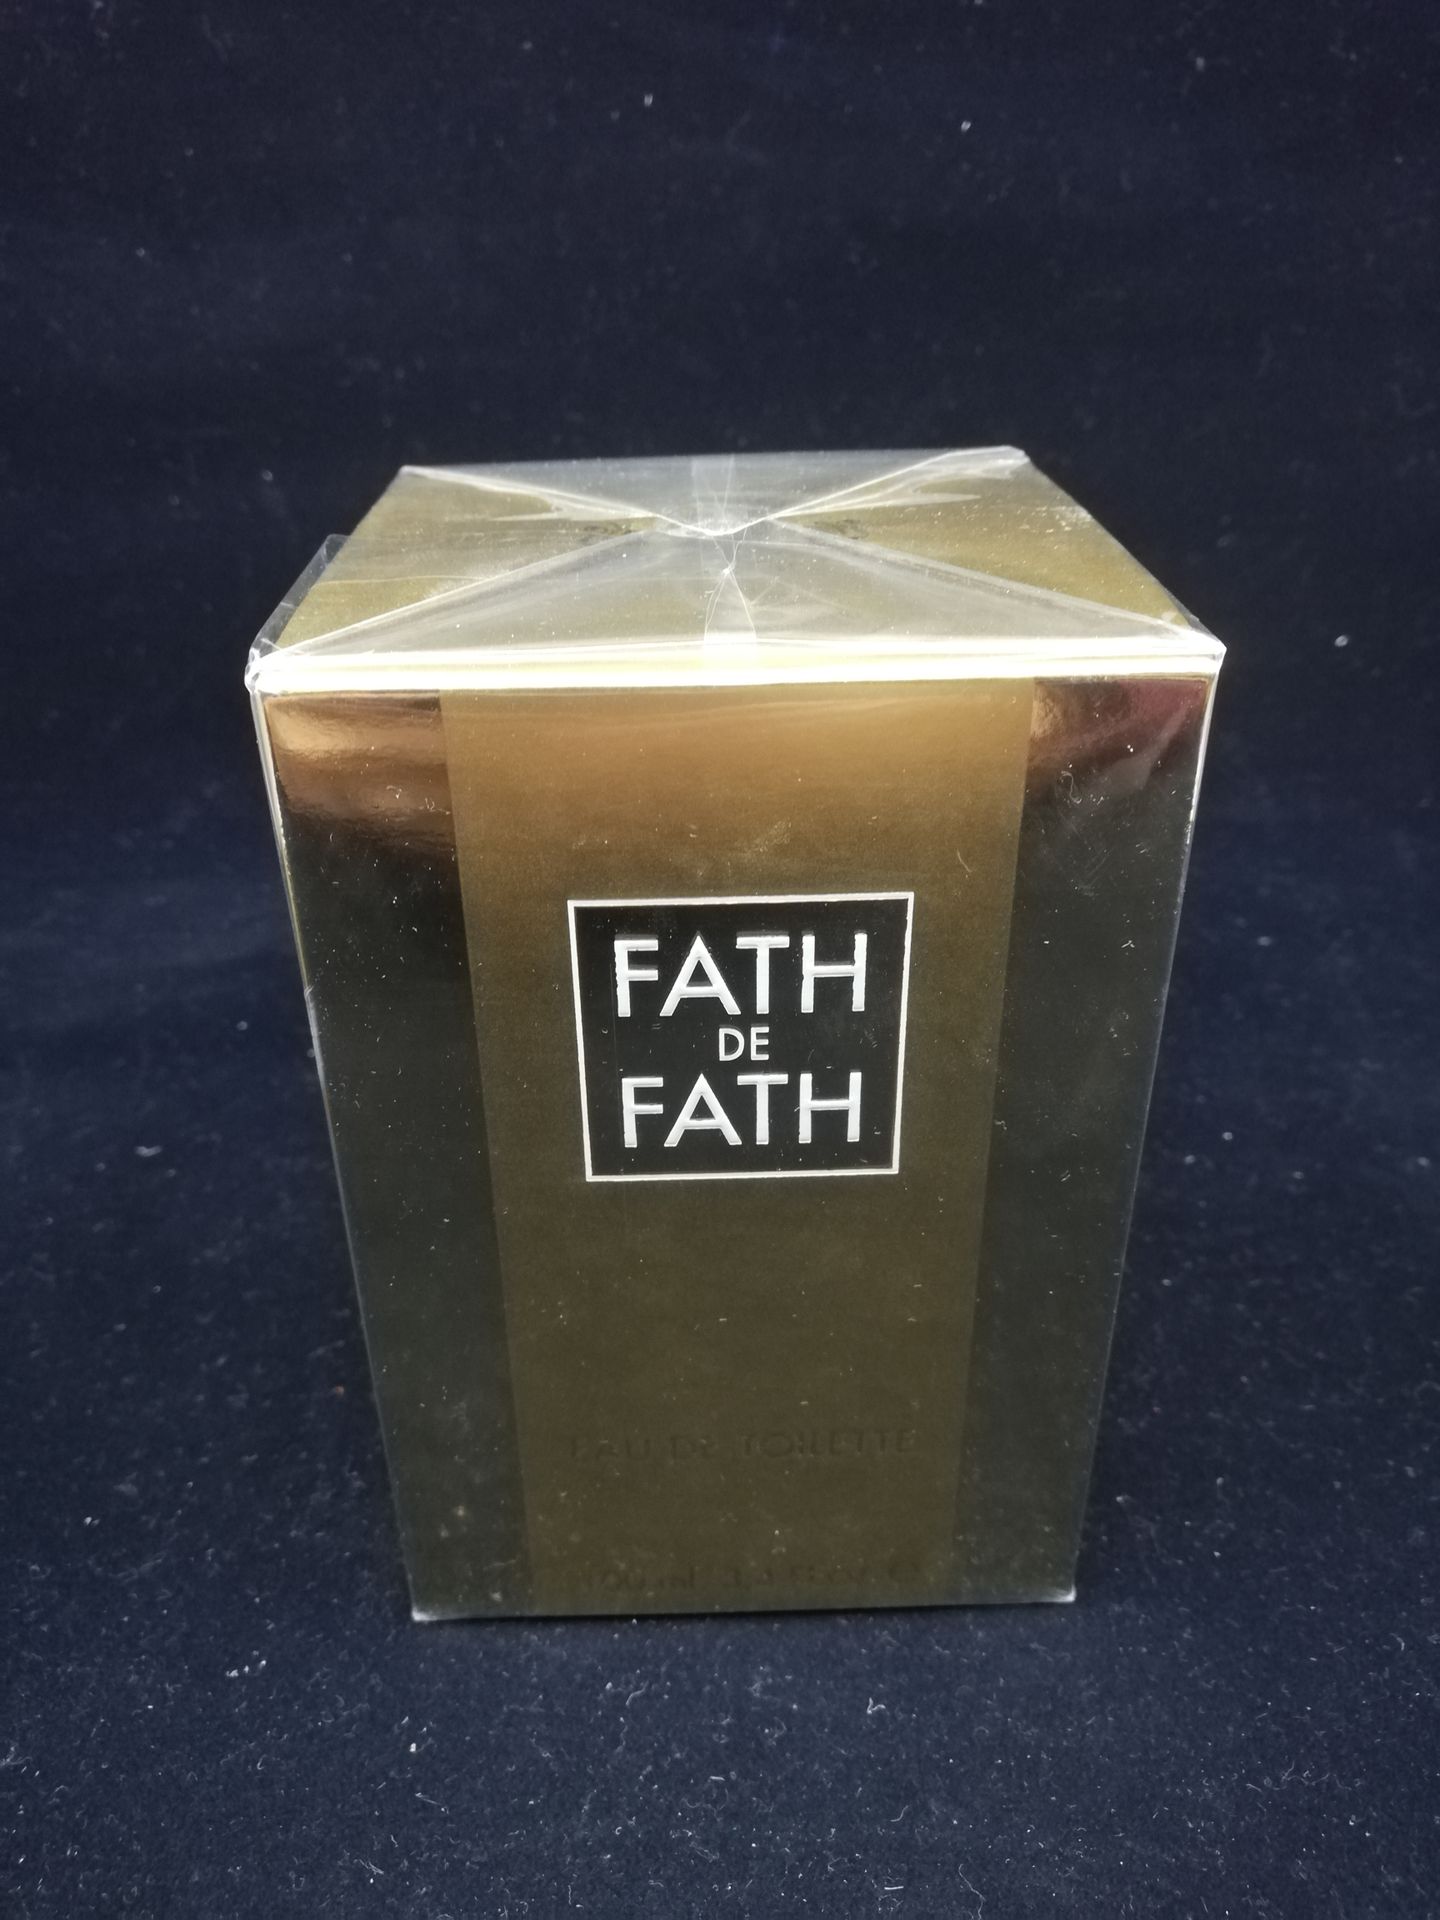 Null Jacques Fath - "Fath de Fath" - (1953)

Presentado en su estuche de cartón &hellip;